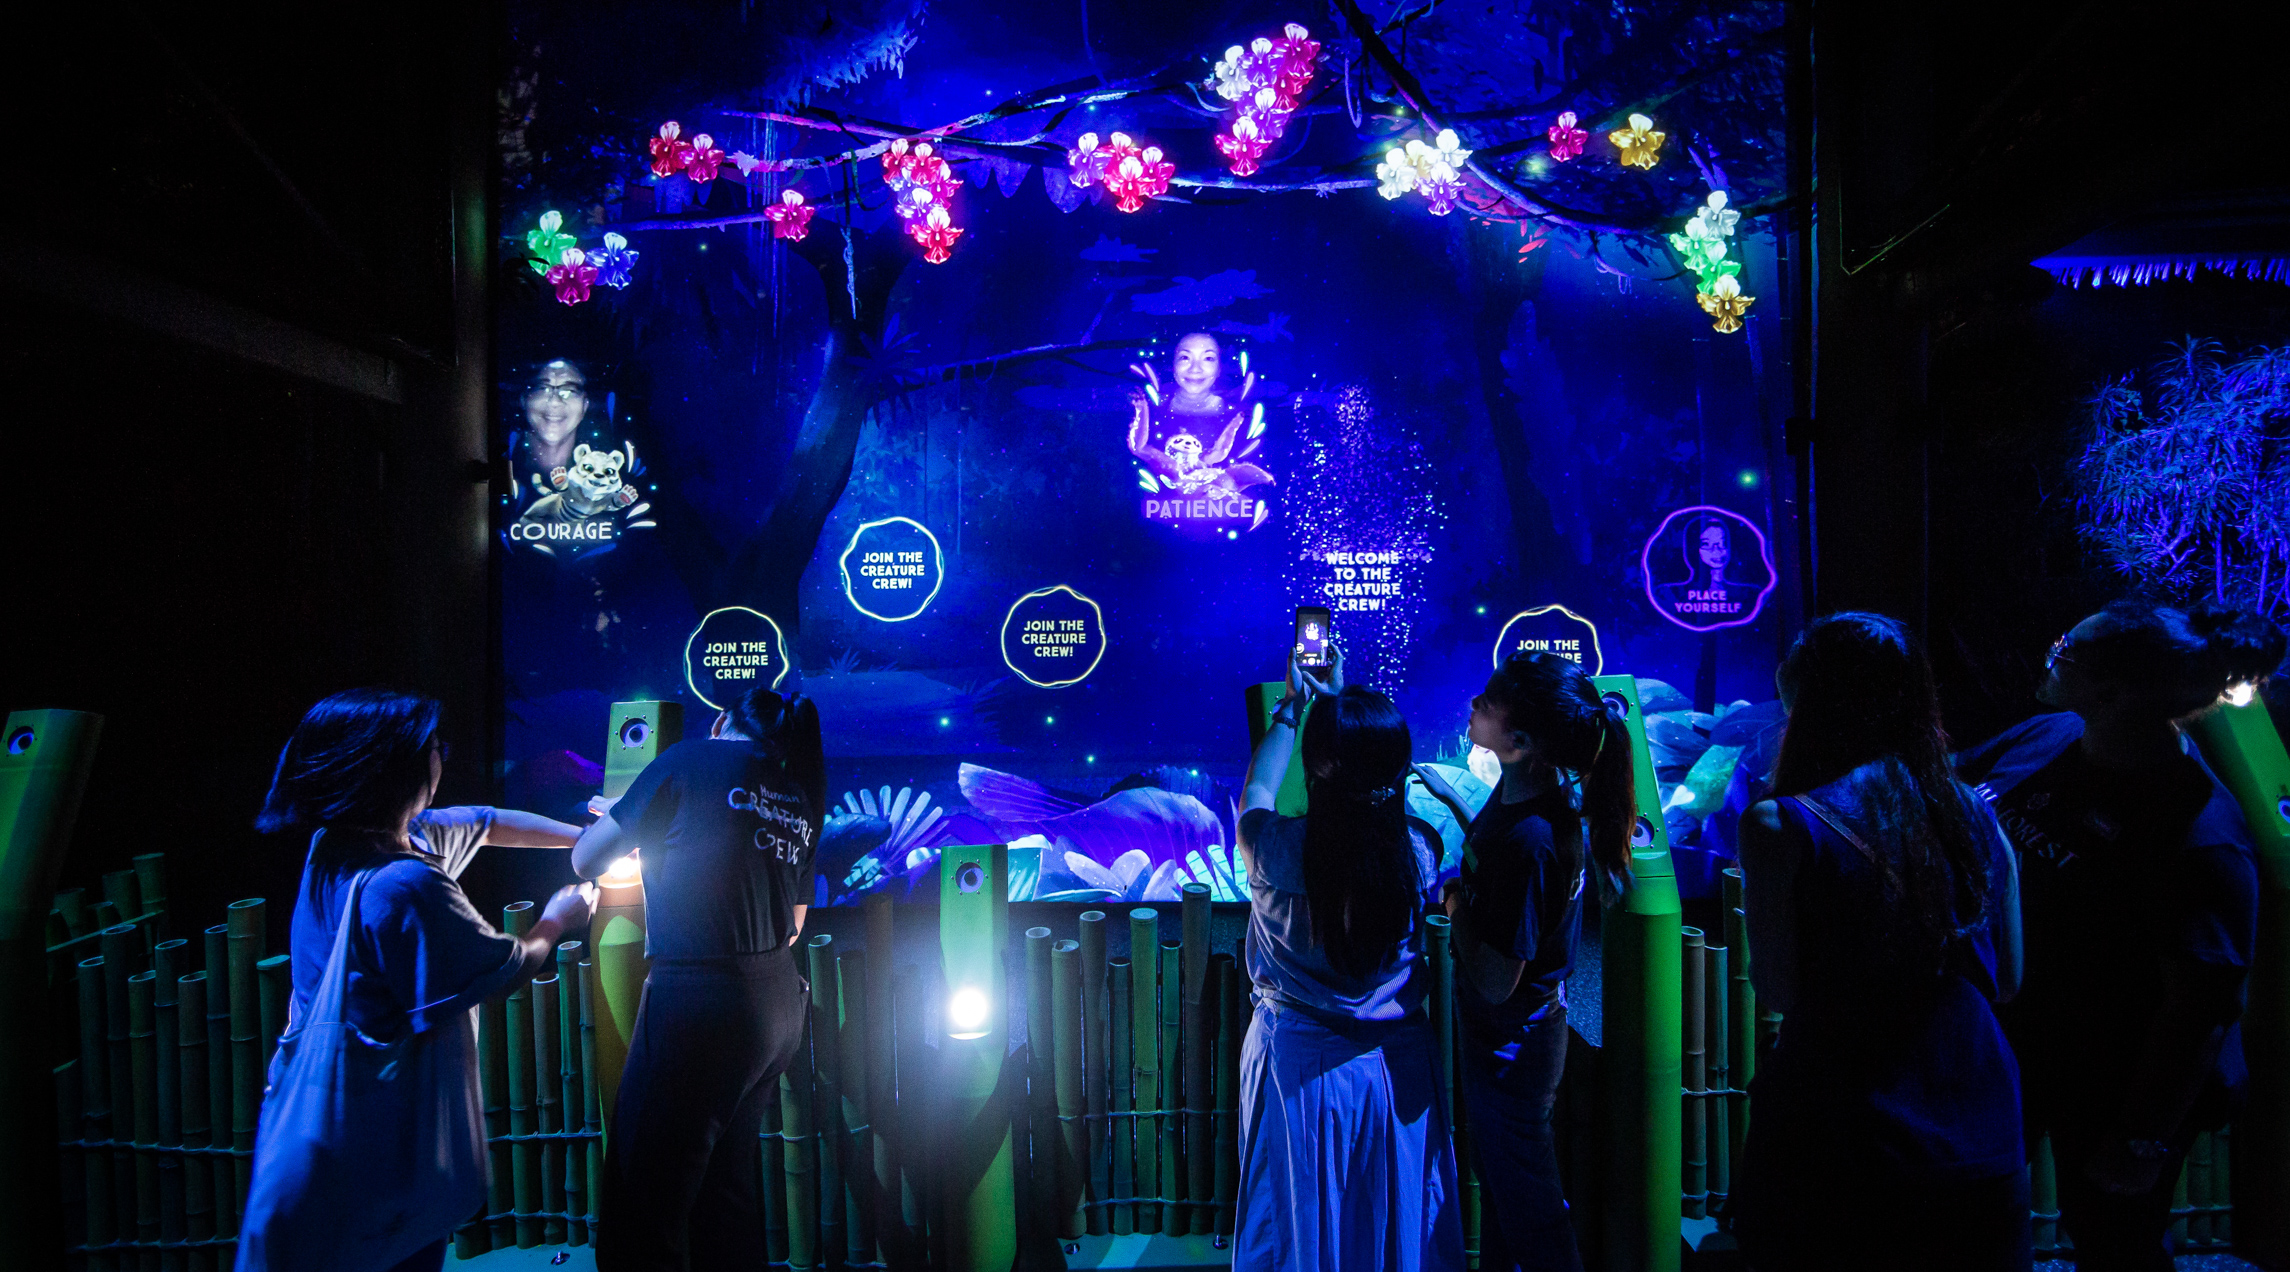 Spectators enjoying the "Rainforest Lumina" multisensory experience at the Singapore Zoo,